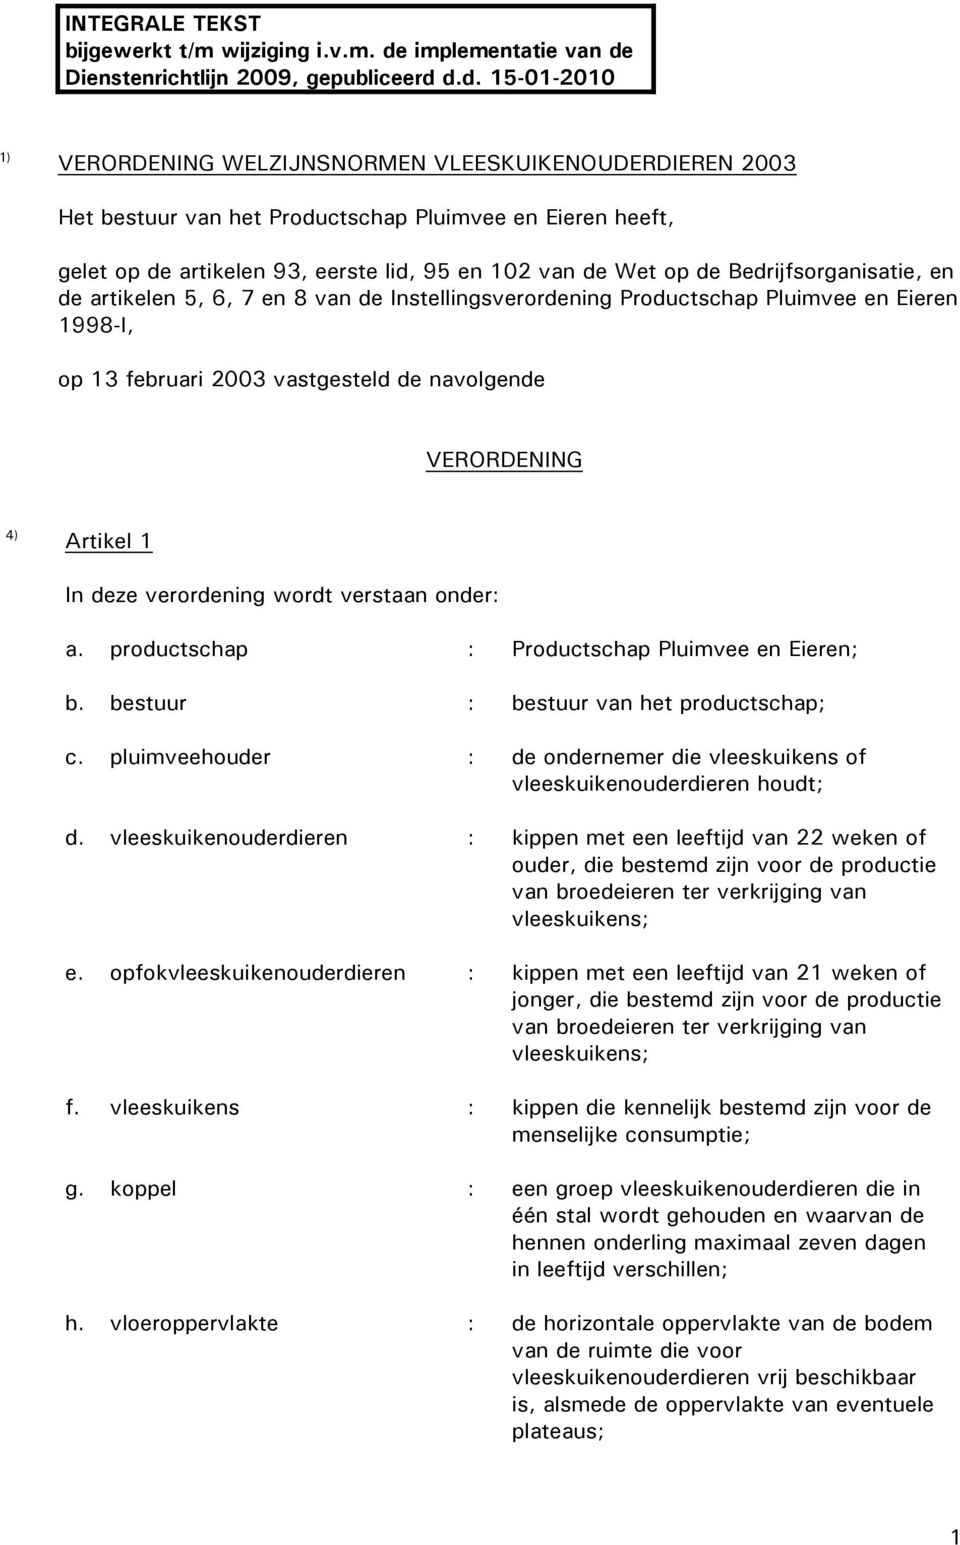 Dienstenrichtlijn 2009, gepubliceerd 